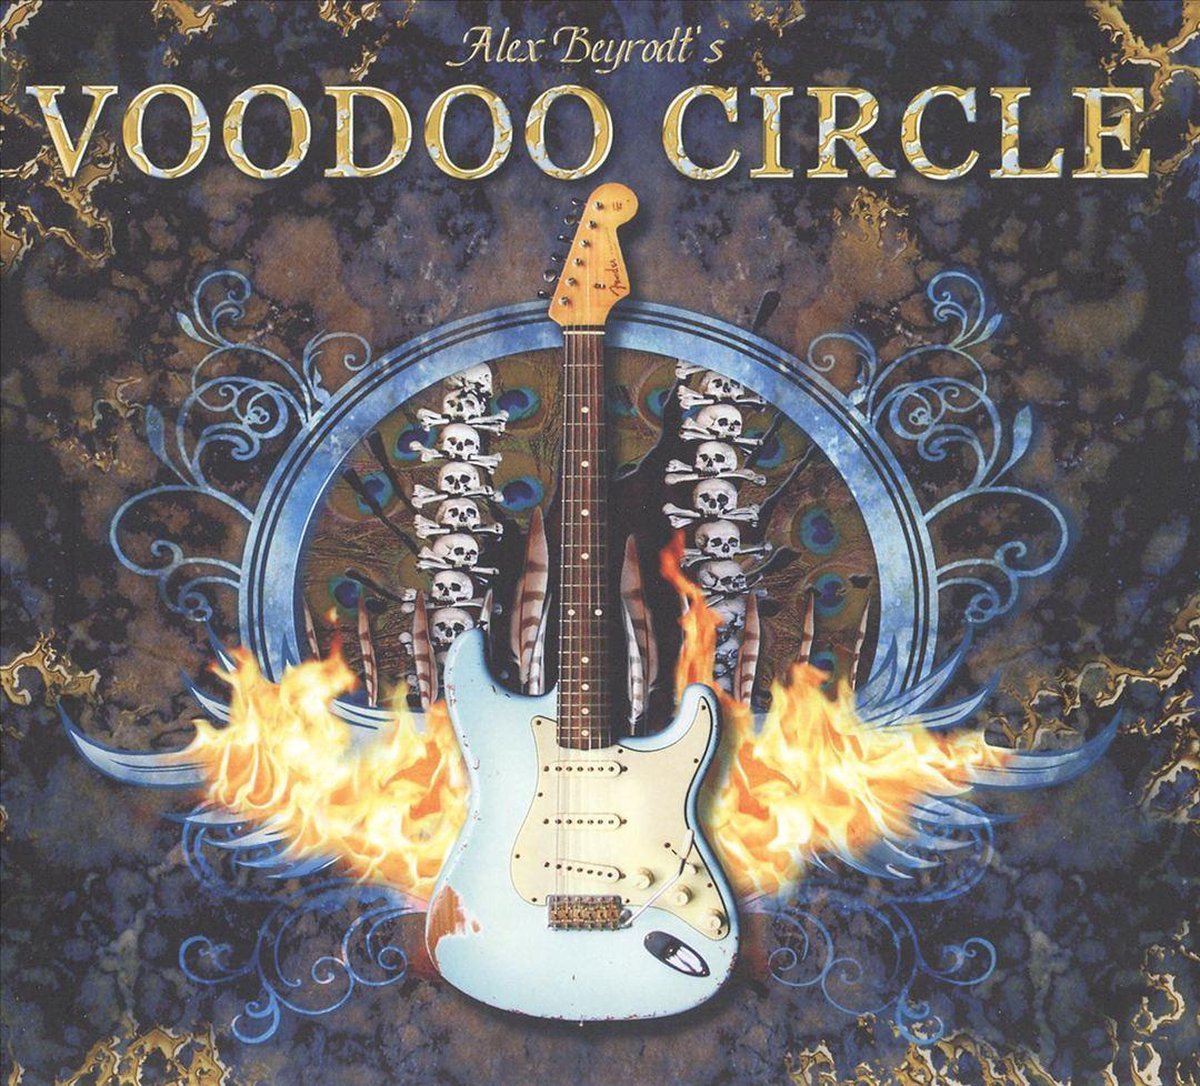 Voodoo Circle - Alex Beyrodt's Voodoo Circle